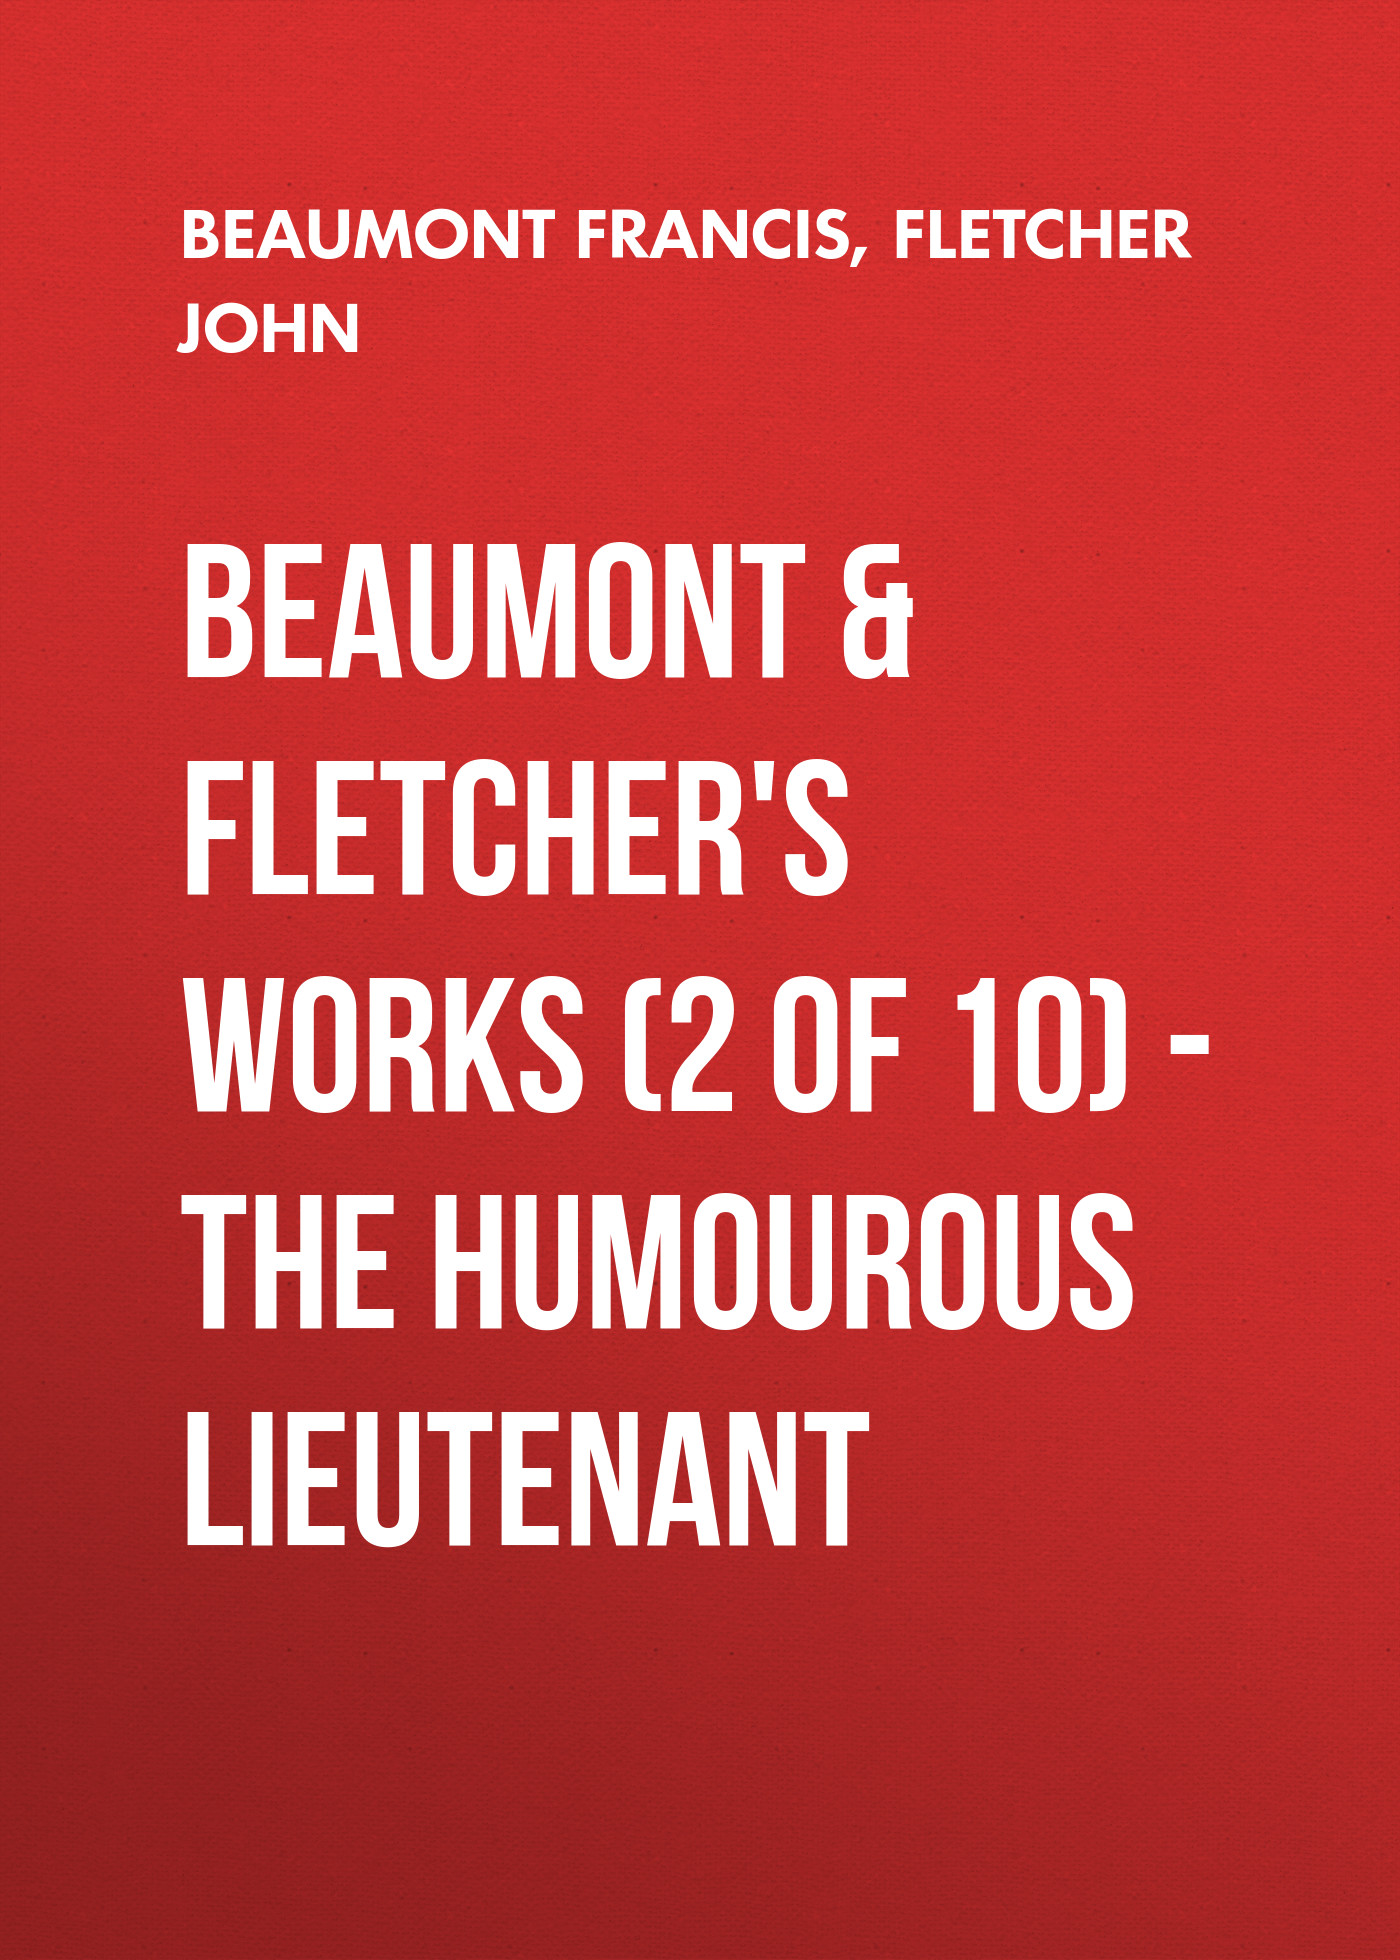 Книга Beaumont & Fletchers Works (2 of 10) – the Humourous Lieutenant из серии , созданная Francis Beaumont, John Fletcher, может относится к жанру Зарубежная драматургия, Драматургия, Зарубежная старинная литература, Зарубежная классика. Стоимость электронной книги Beaumont & Fletchers Works (2 of 10) – the Humourous Lieutenant с идентификатором 36363654 составляет 0 руб.